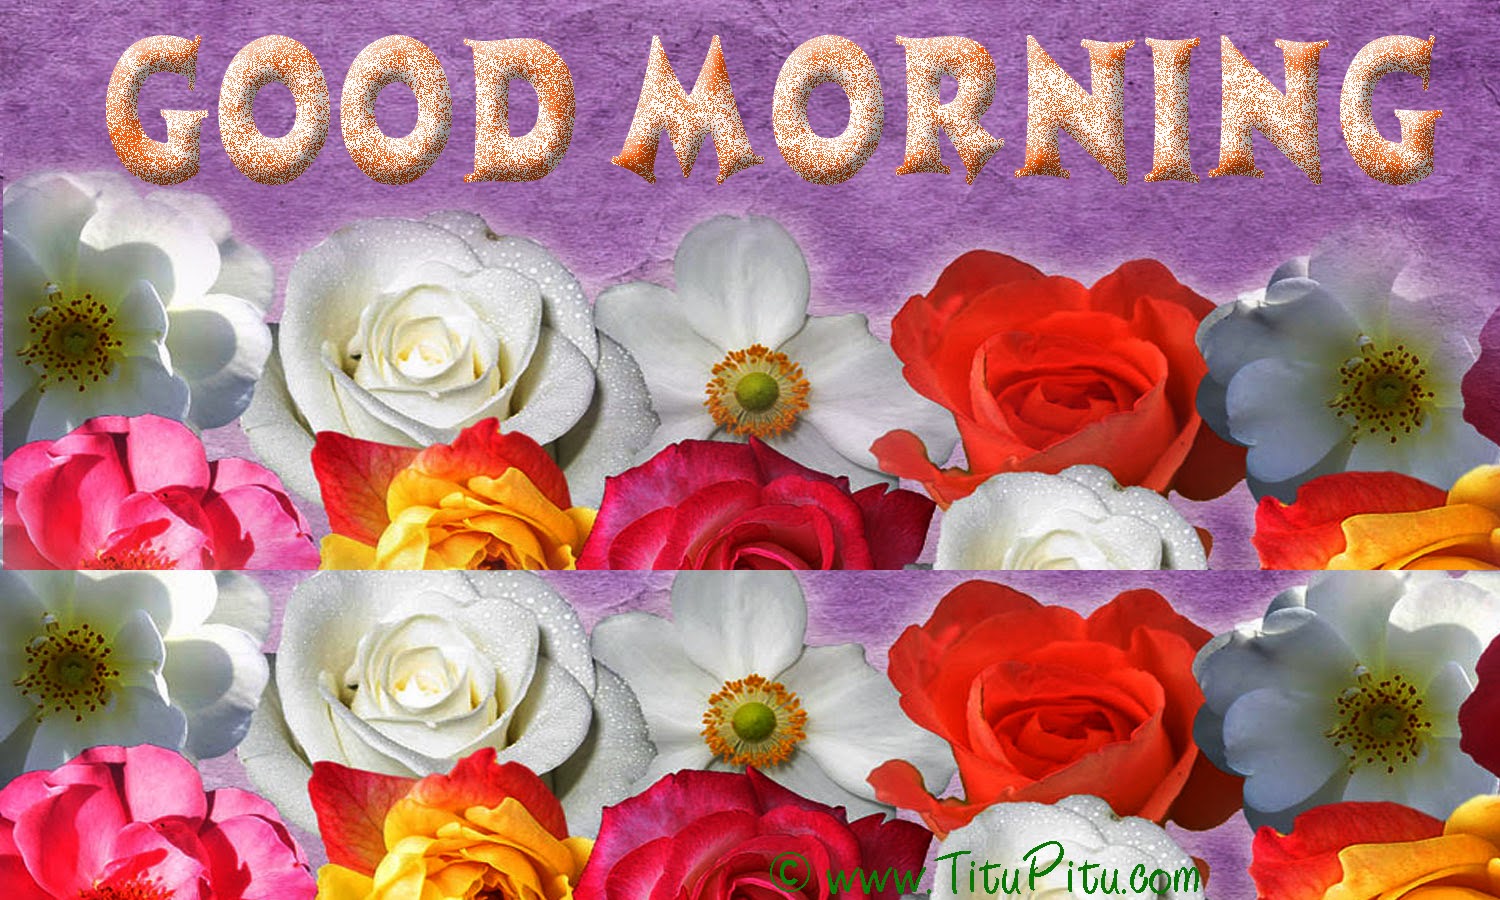 최신 좋은 아침 벽지,꽃,정원 장미,꽃잎,장미,장미 가족